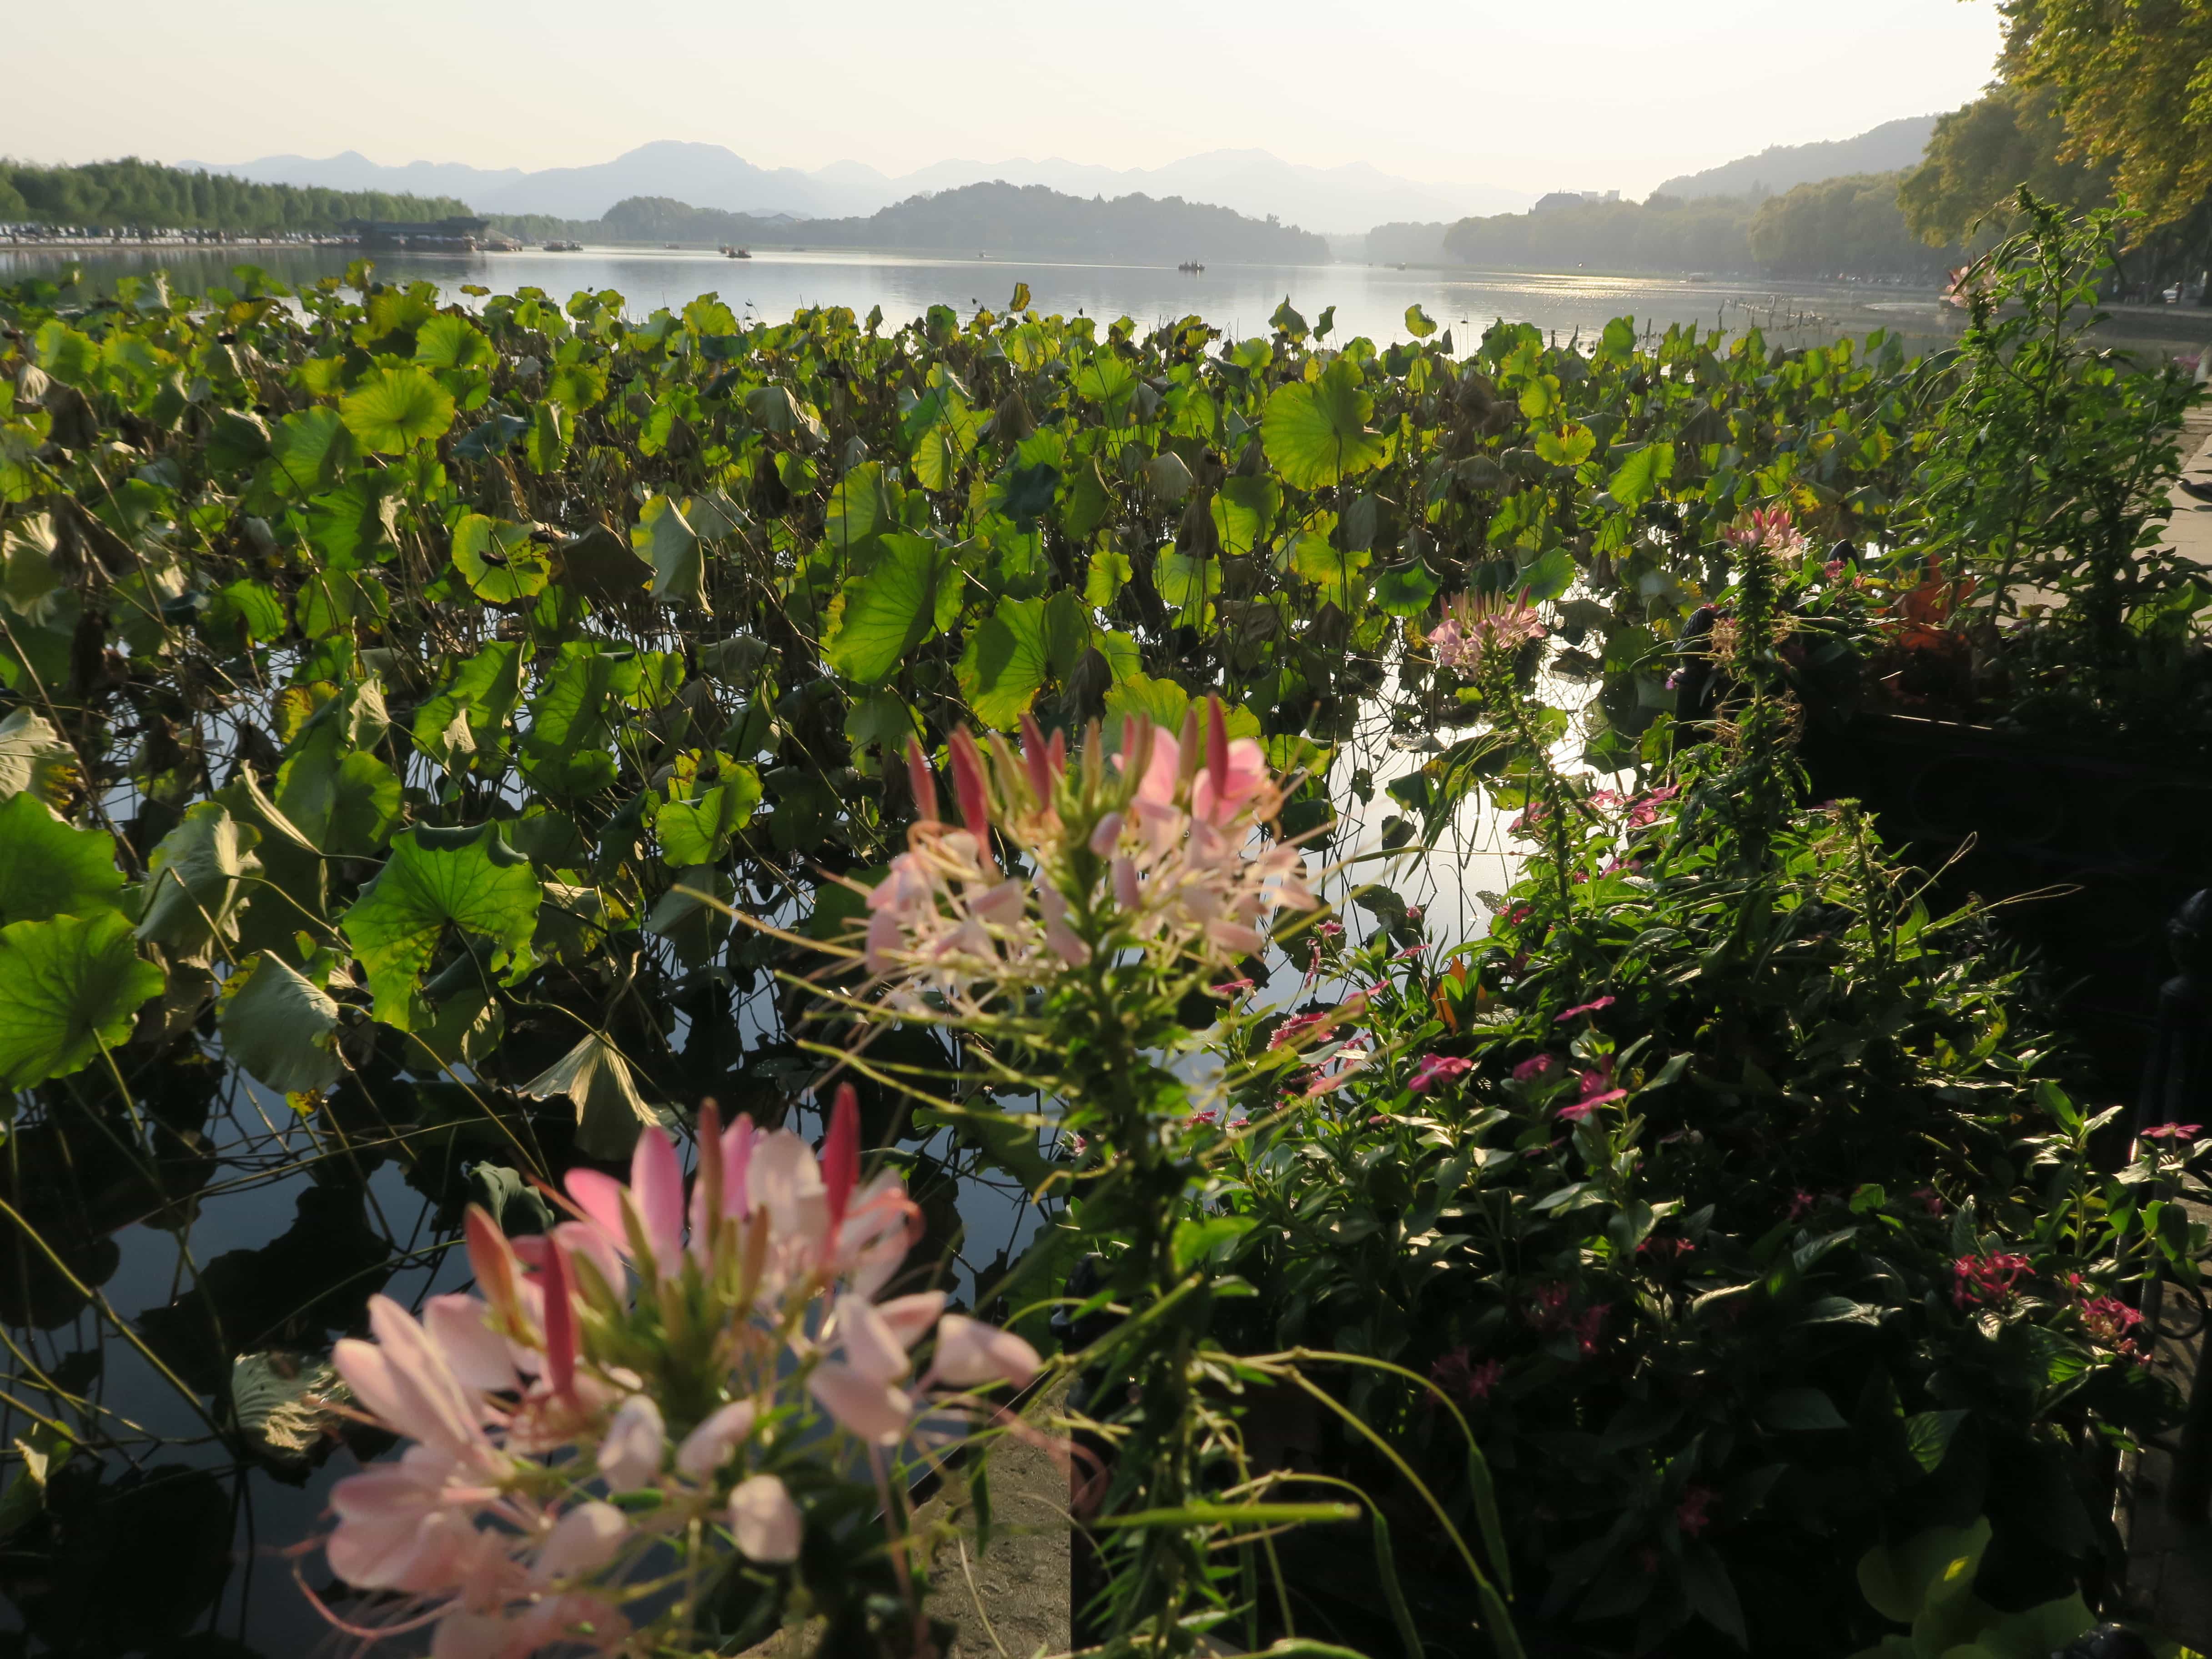 Gartenkunst in China. Lotusteich bei Sonnenaufgang mit Weitblick auf Hügellandschaft